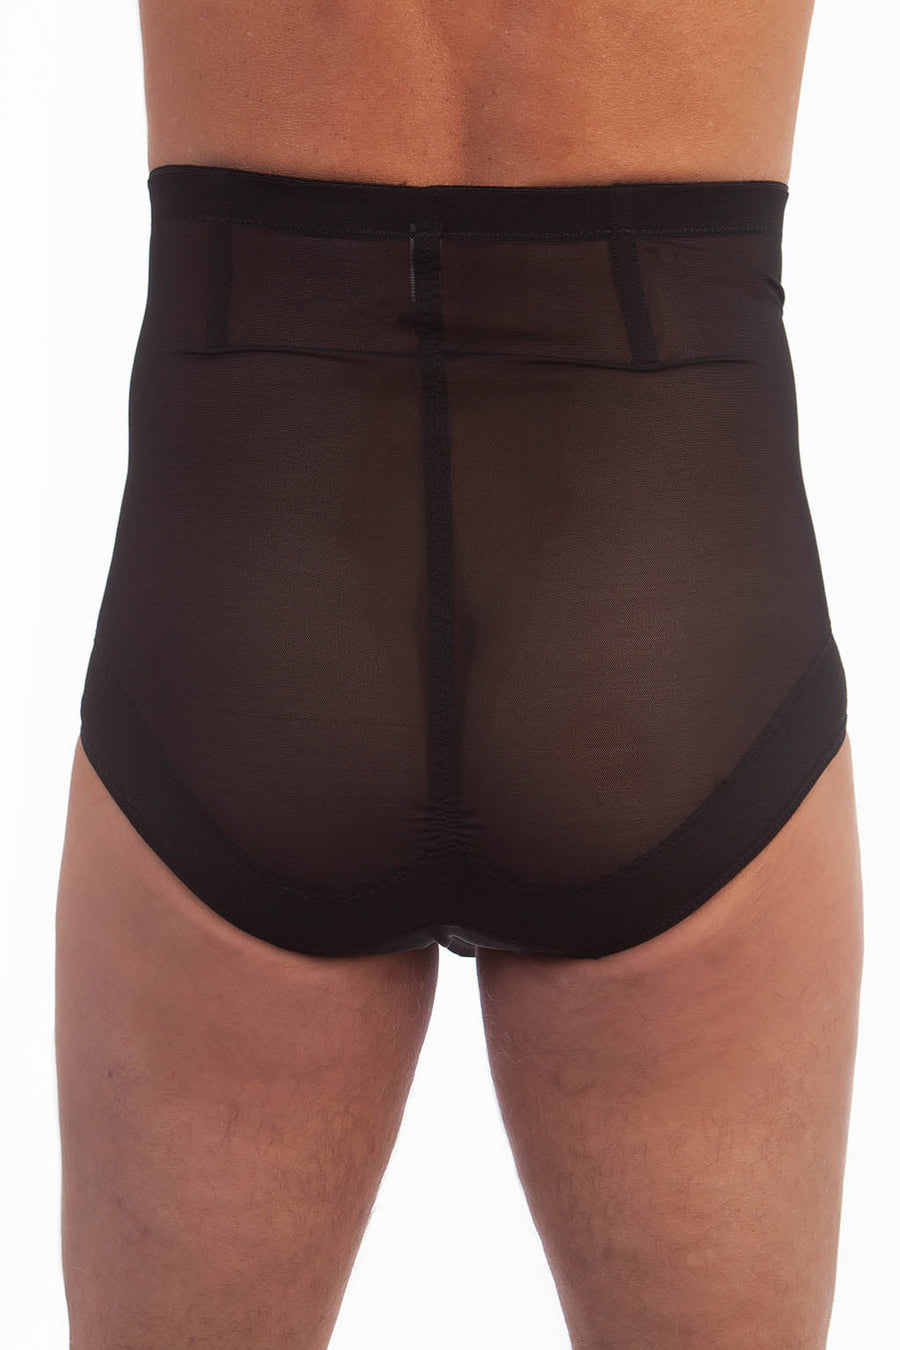 BfM Mens High Waist Pouch Corset Brief Tummy Control Underwear